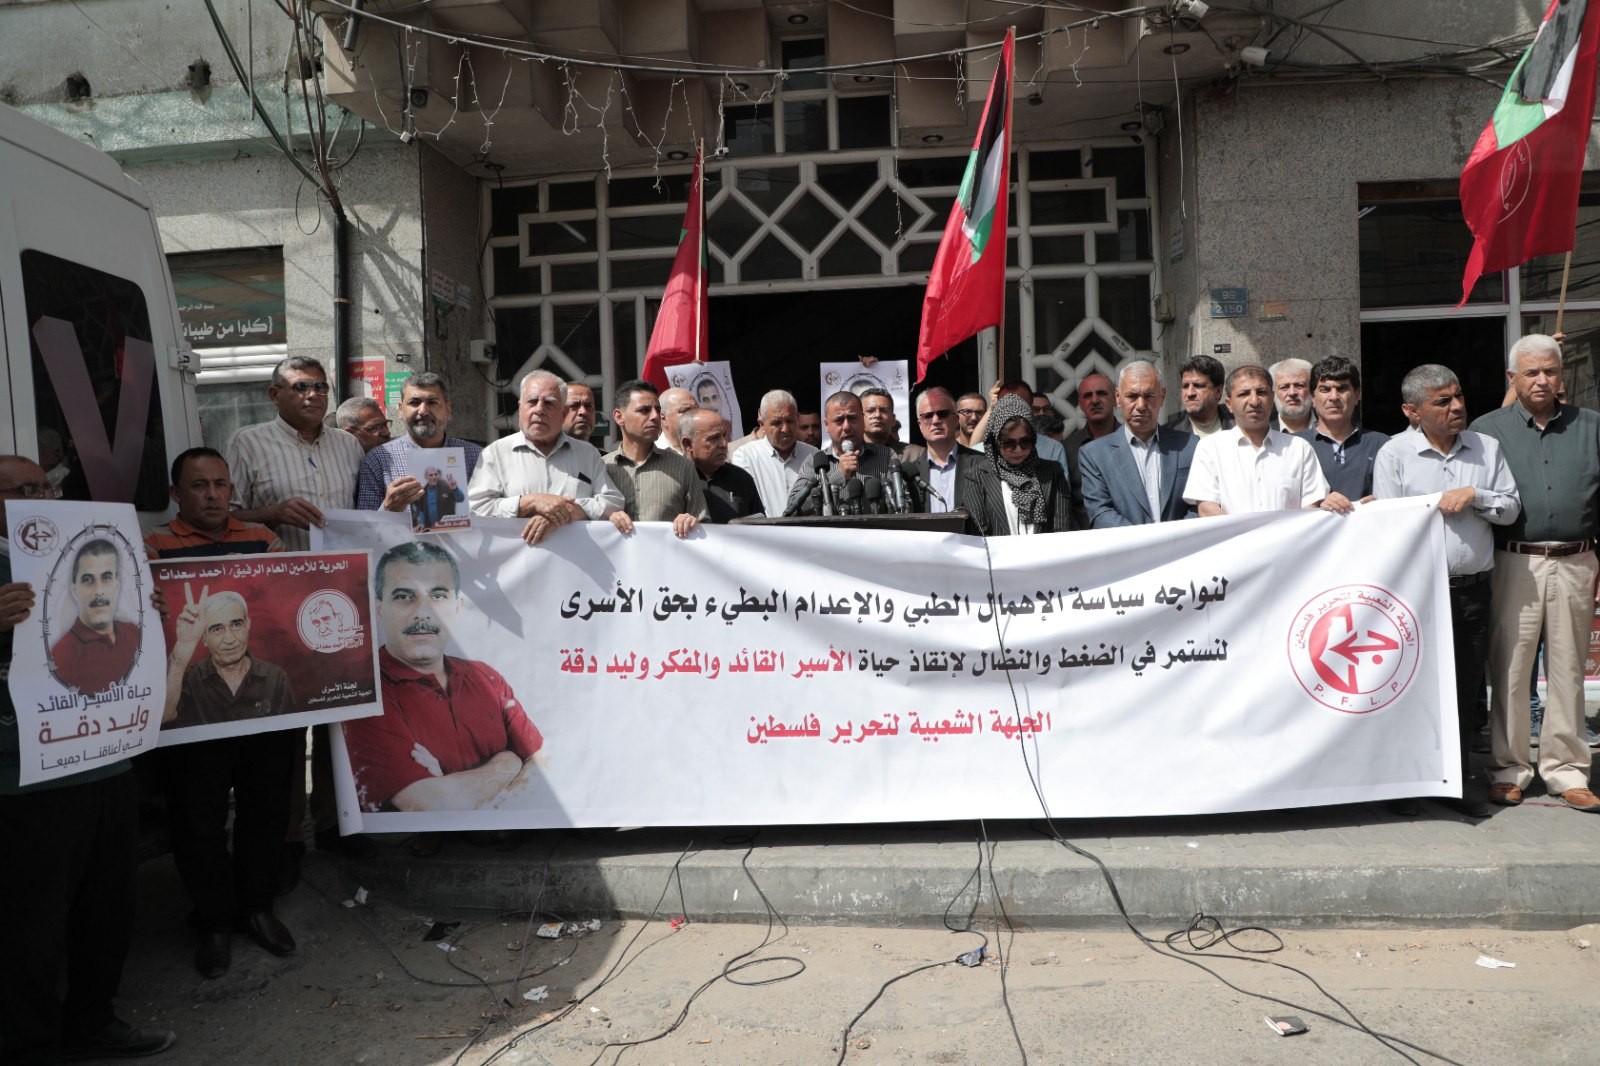 لمؤتمر الصحفي الذي نظمته الجبهة الشعبيّة لتحرير فلسطين أمام برج شوا وحصري بمدينة غزّة 2.jpg